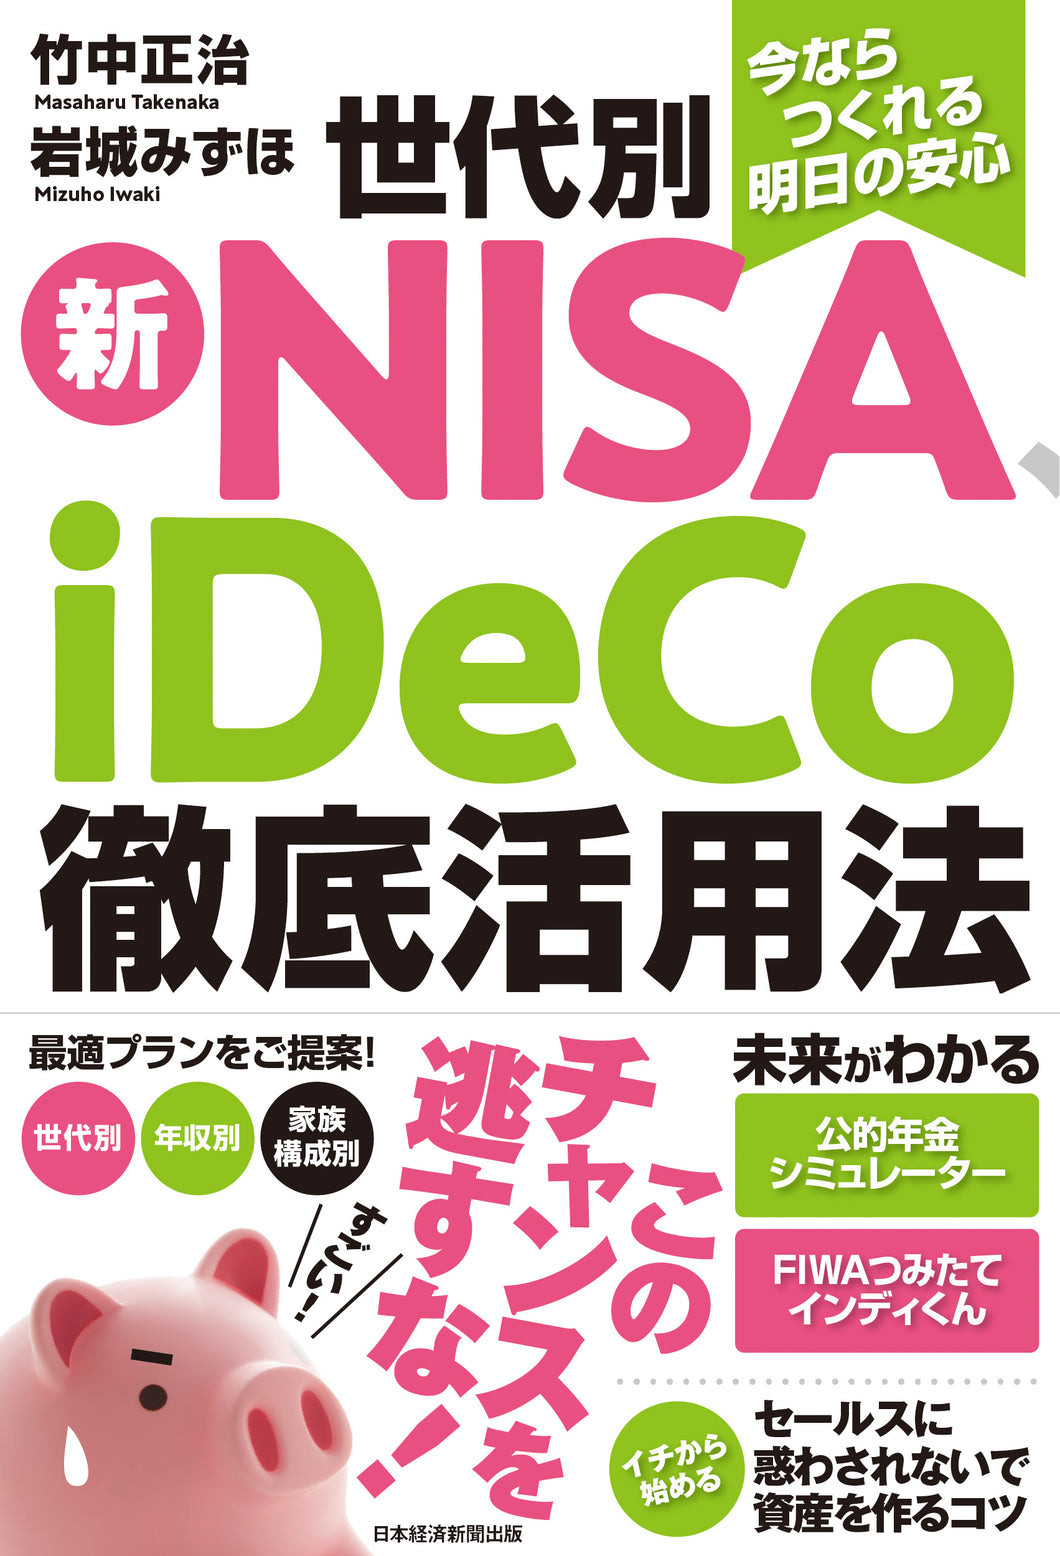 世代別 新NISA、iDeCo徹底活用法